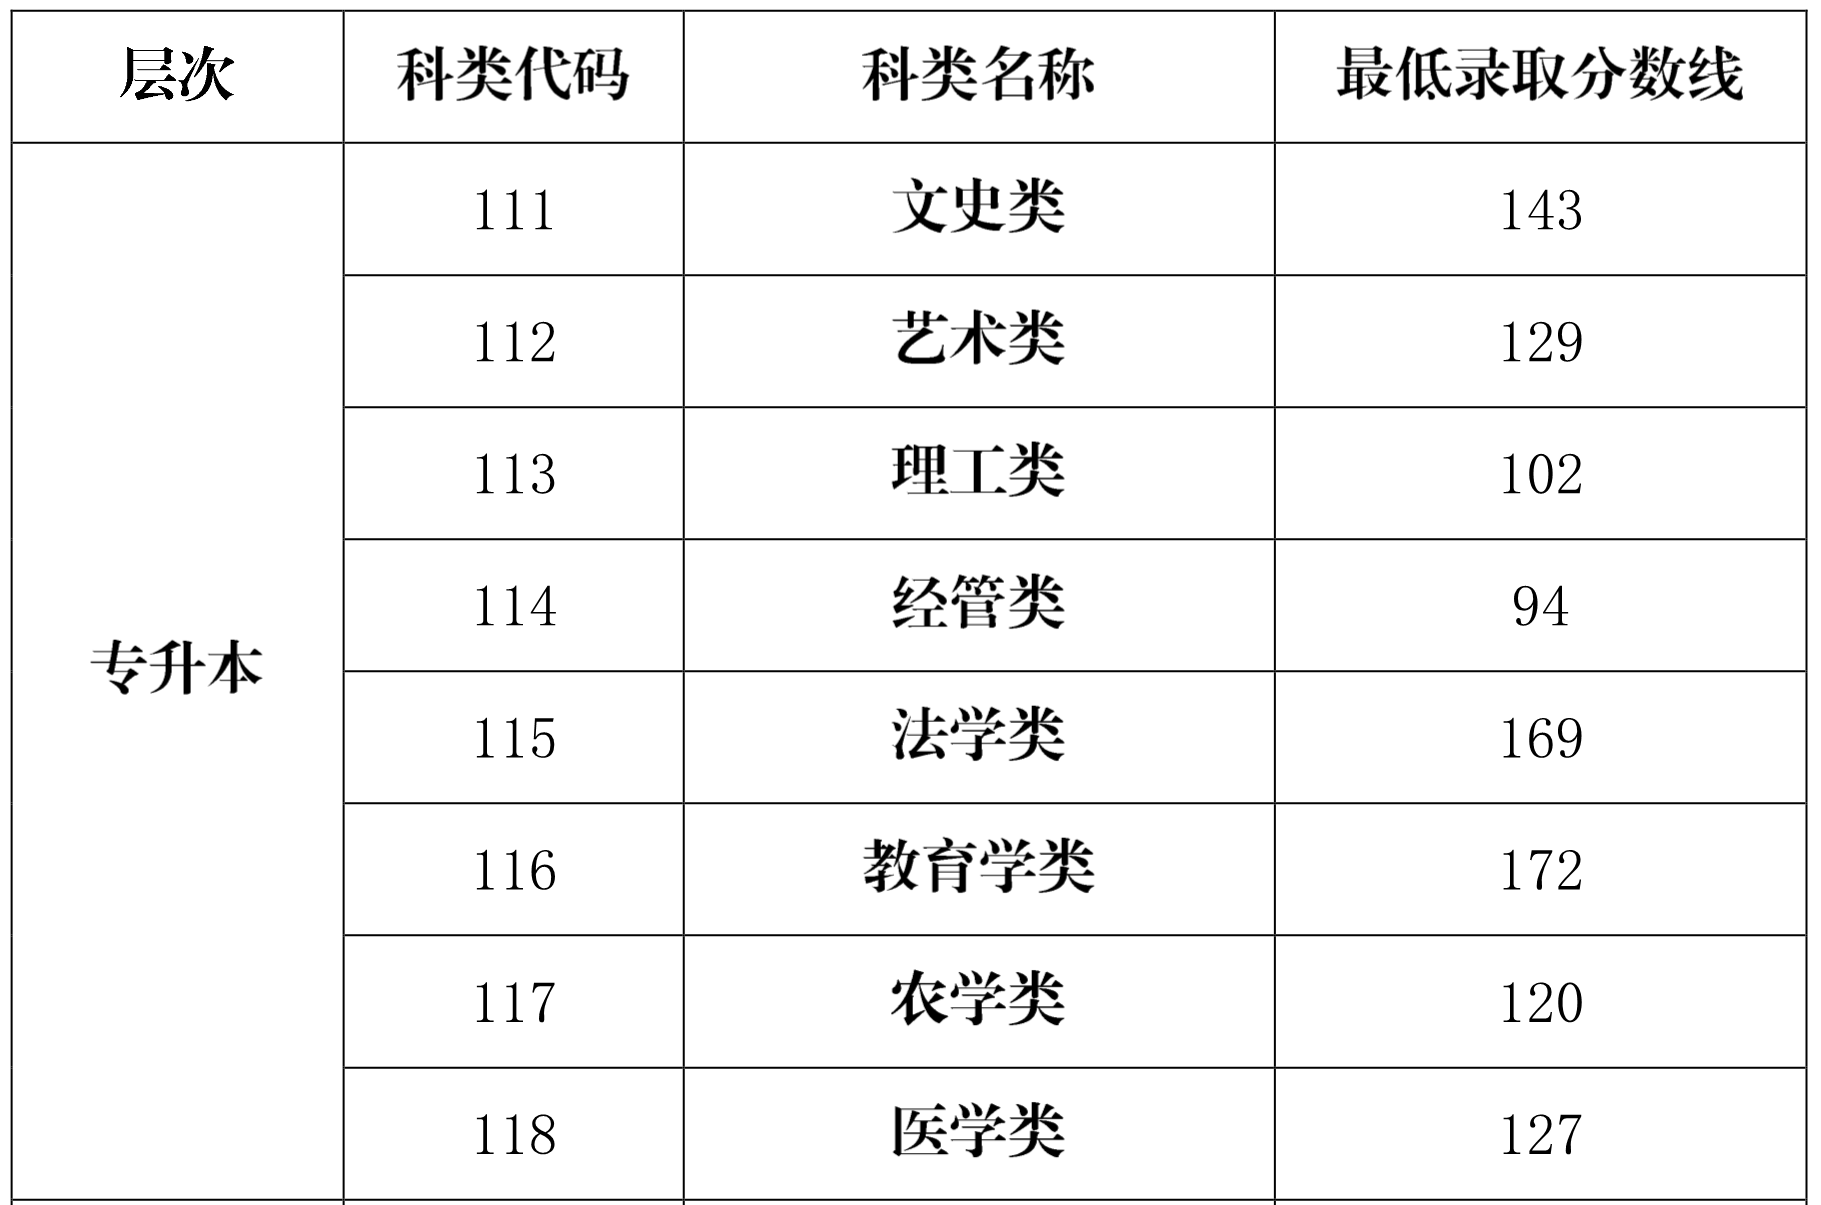 海南省2020年成人高校招生录取最低控制分数线公告